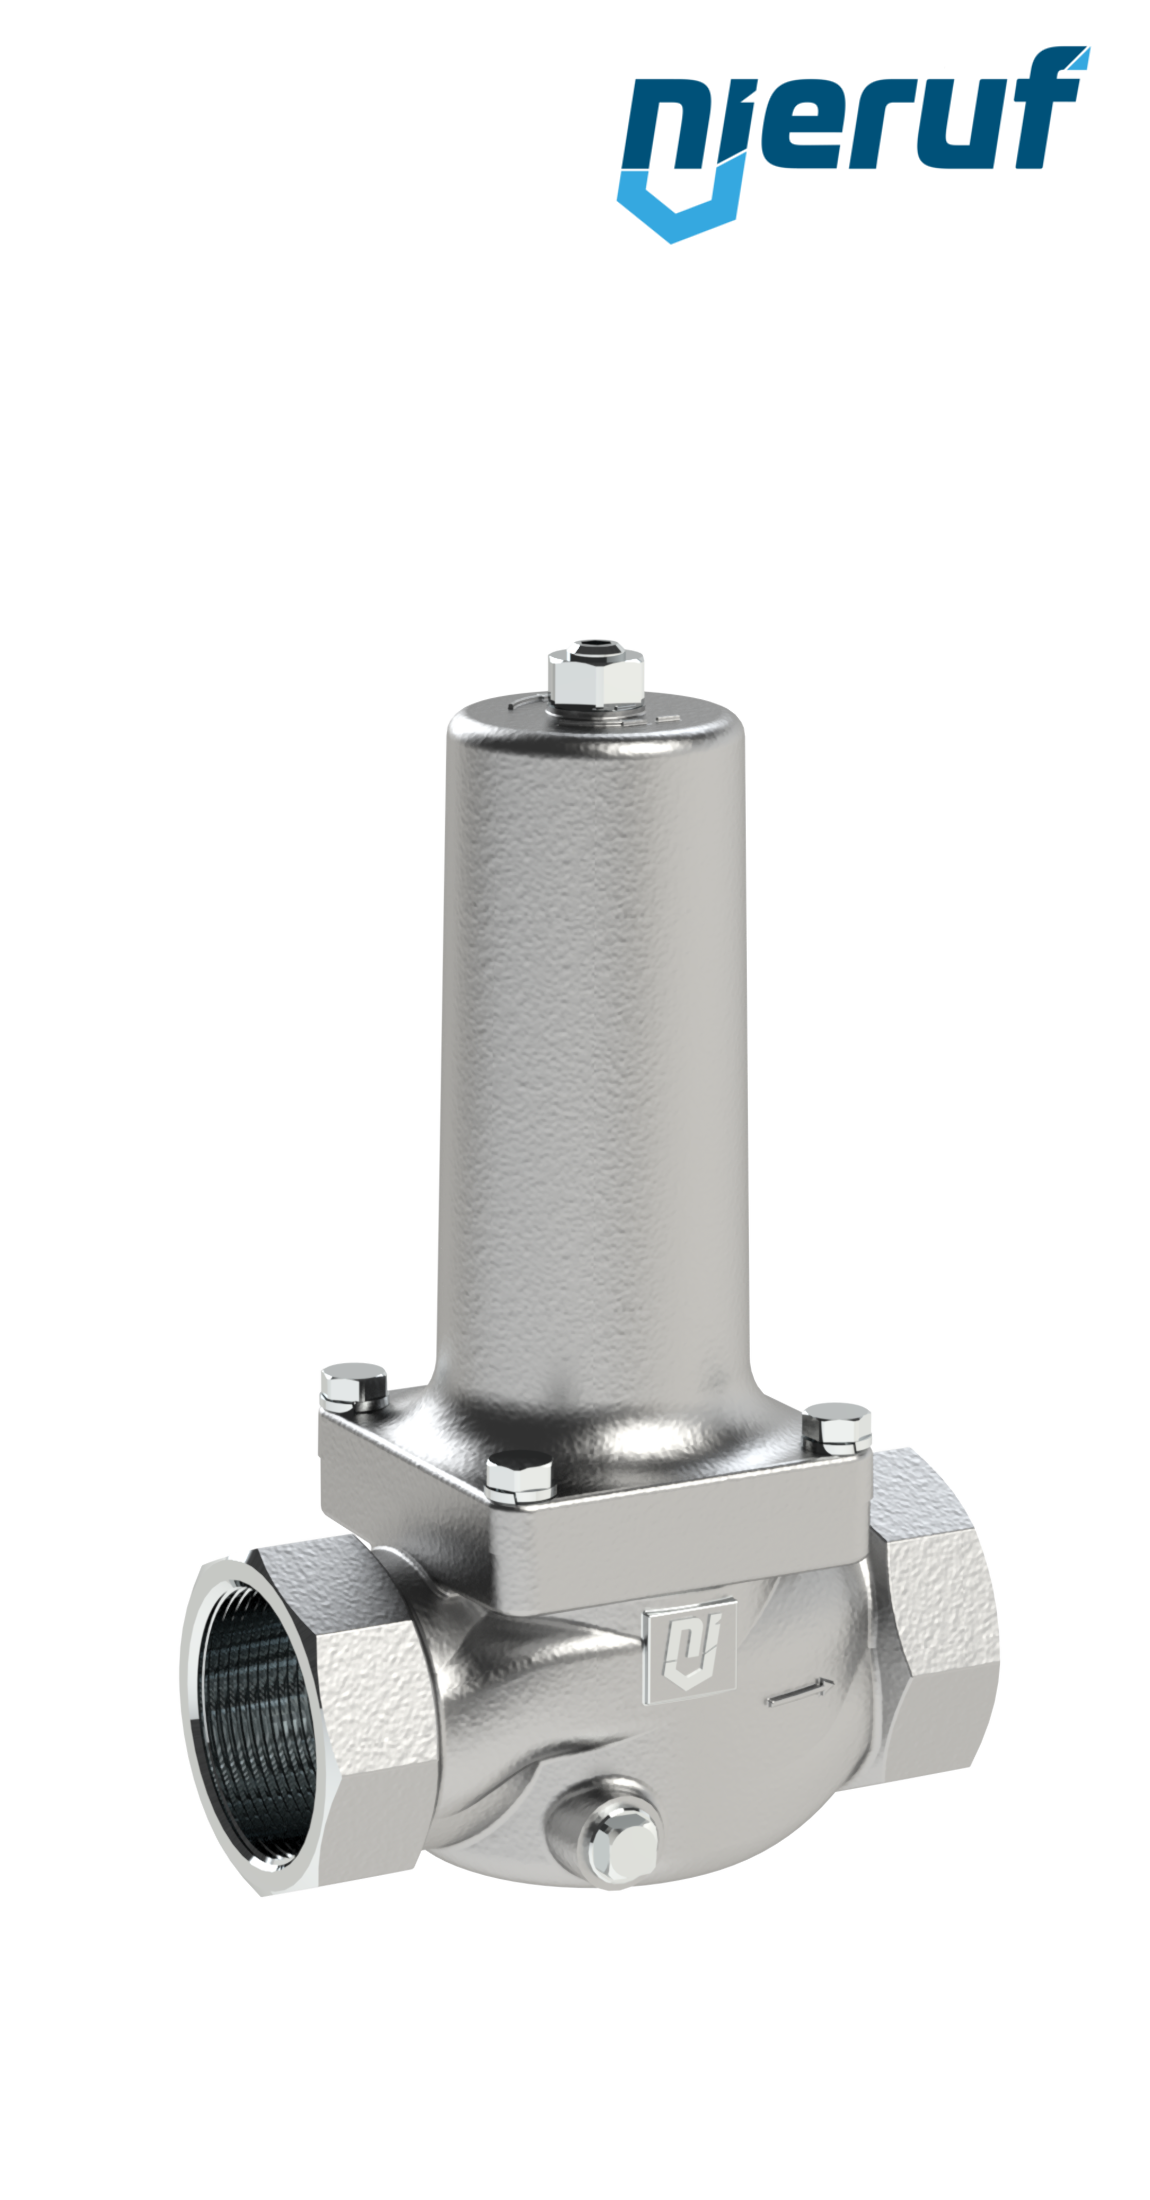 réducteur de pression pour vapeur 1 1/2" pouce NPT DM21 acier inoxydable PTFE / EPDM / FEPM 4.0 - 10.0 bar